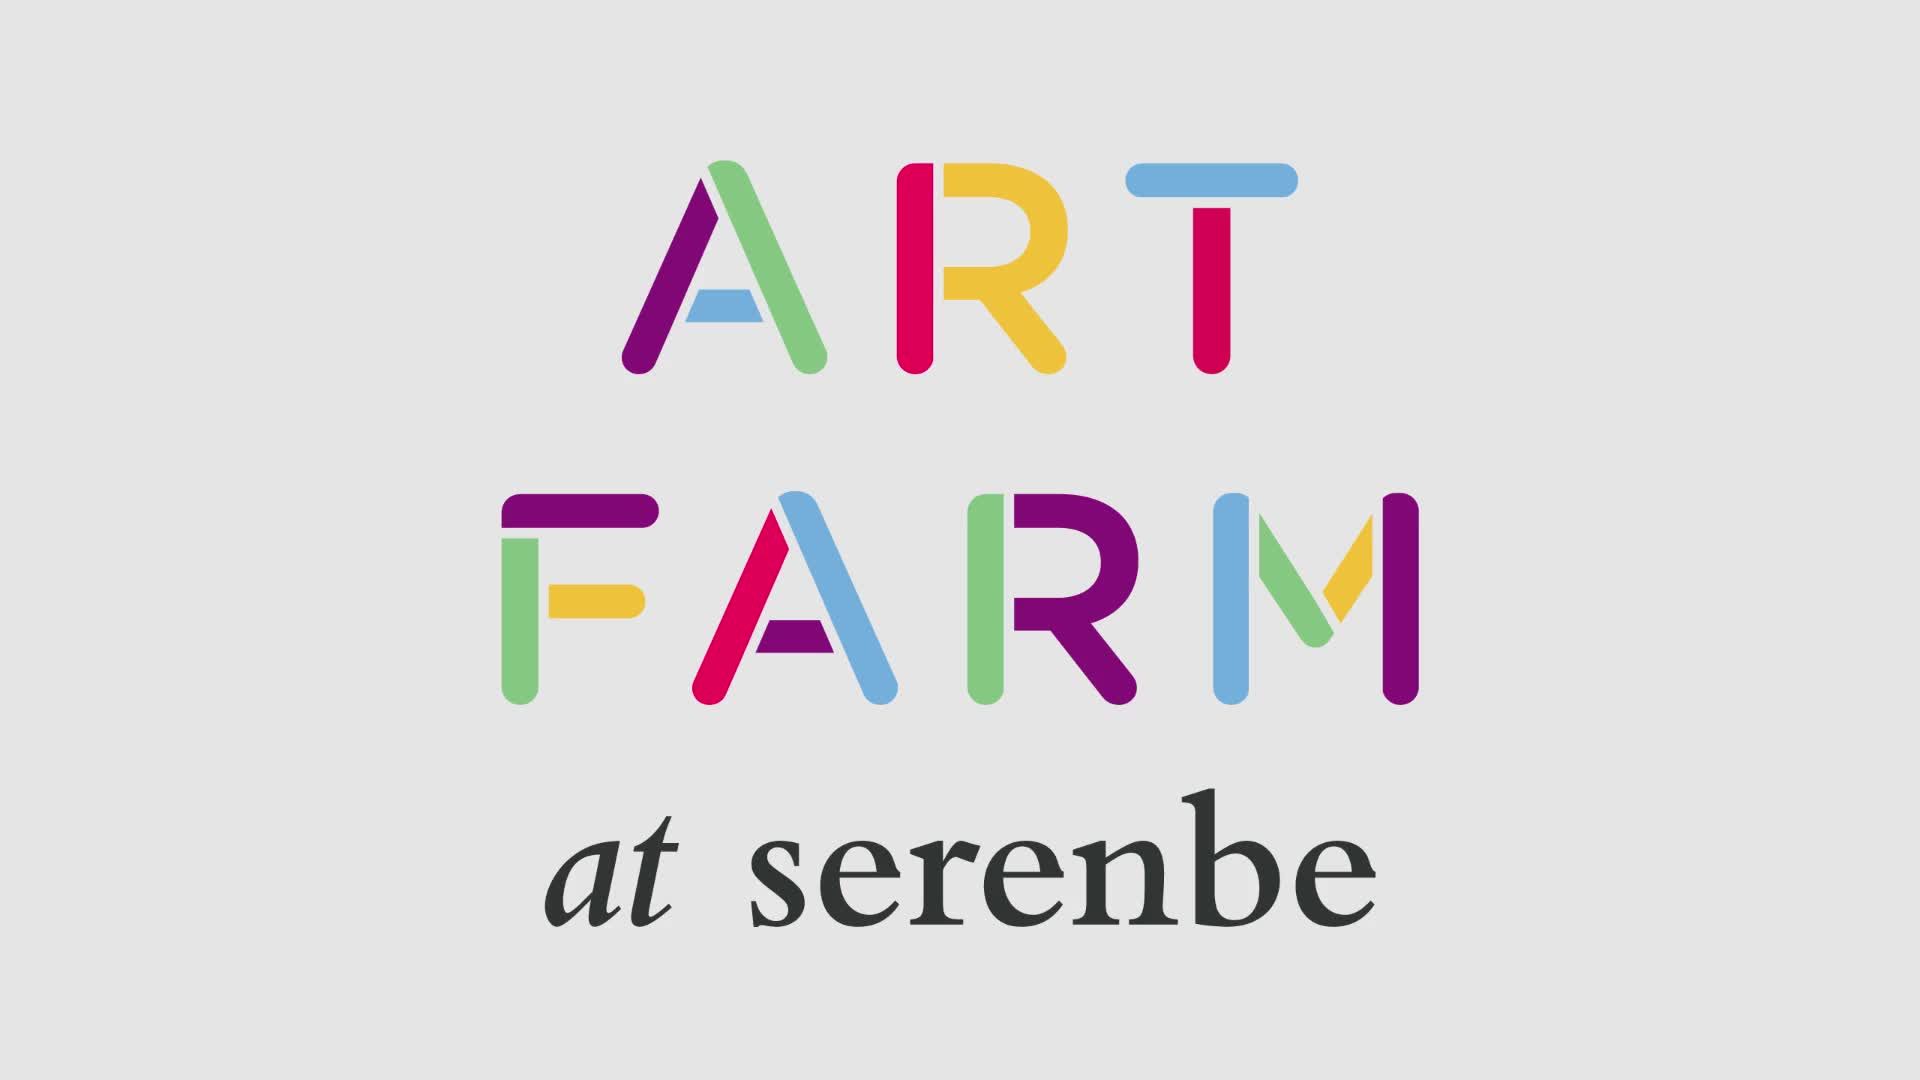 The Art Farm at Serenbe